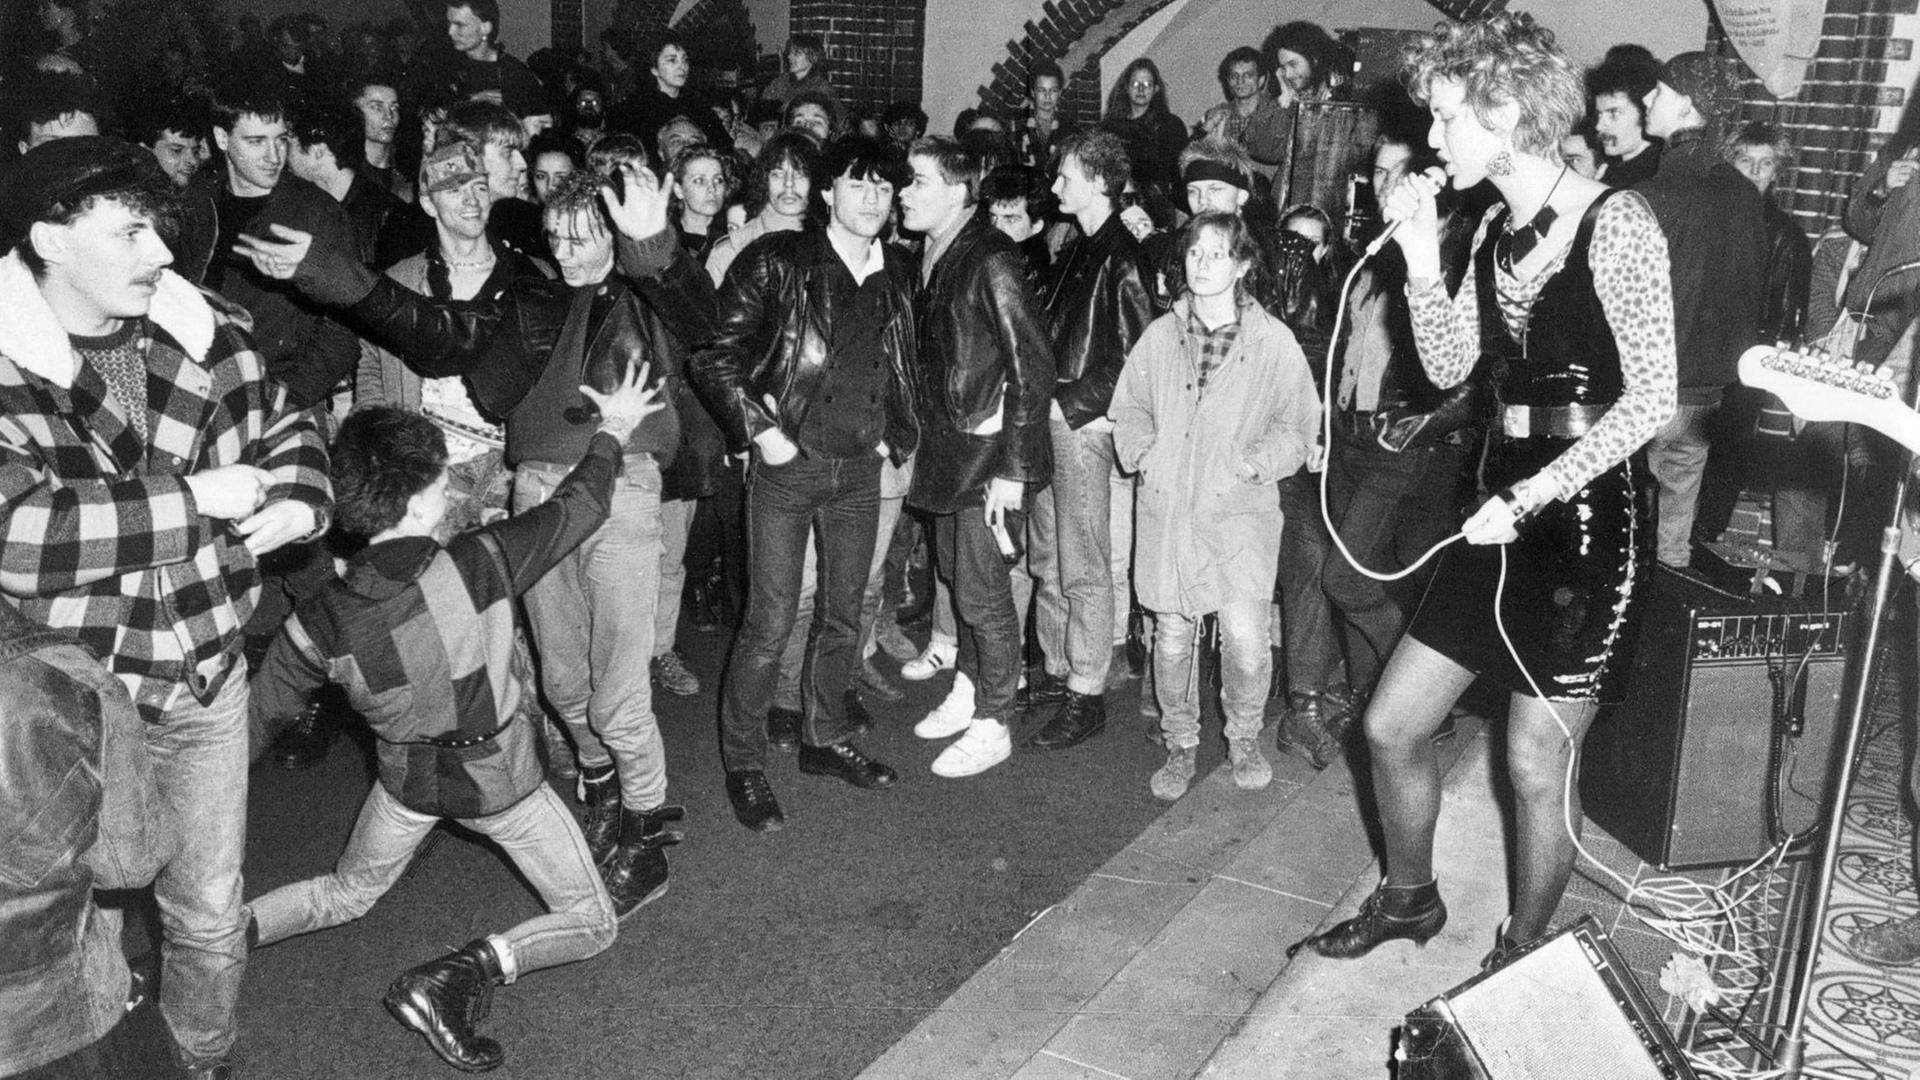 Auf der schwarzweiss Aufnahme ist das Benefizkonzert in der Berliner Erlöserkirche 1988 zu sehen. Eine Sängerin steht vor einer tanzenden Masse aus jungen Menschen.